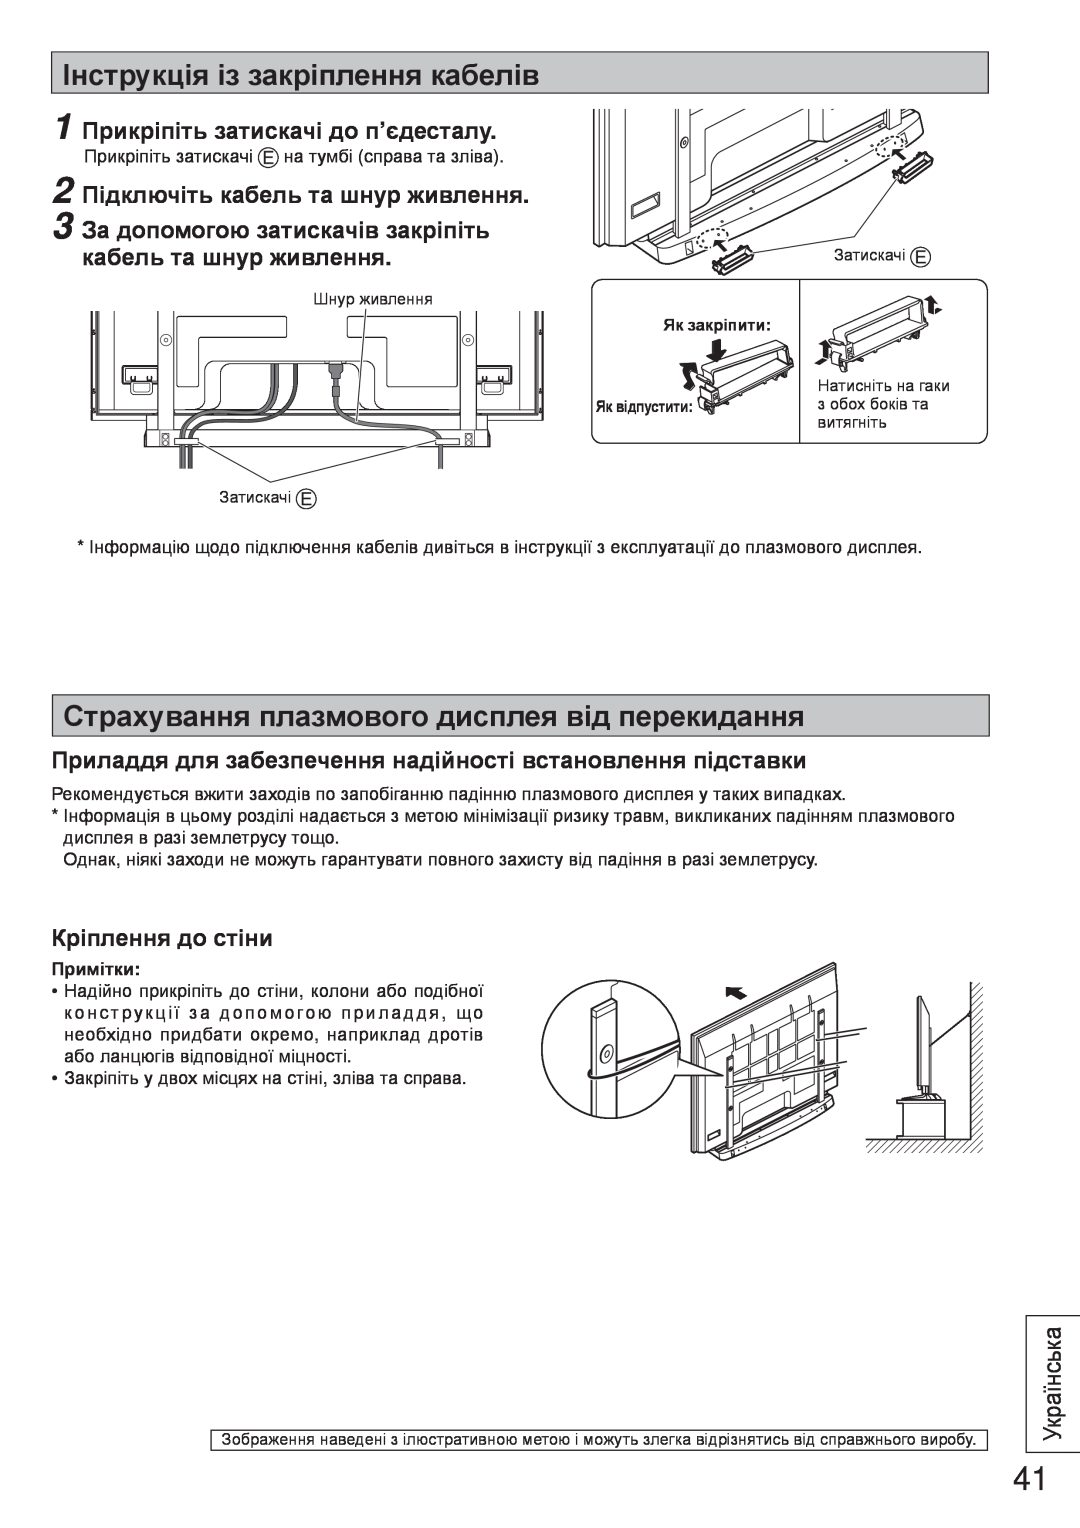 Panasonic TY-ST65VX100 Інструкція із закріплення кабелів, Страхування плазмового дисплея від перекидання, Українська 